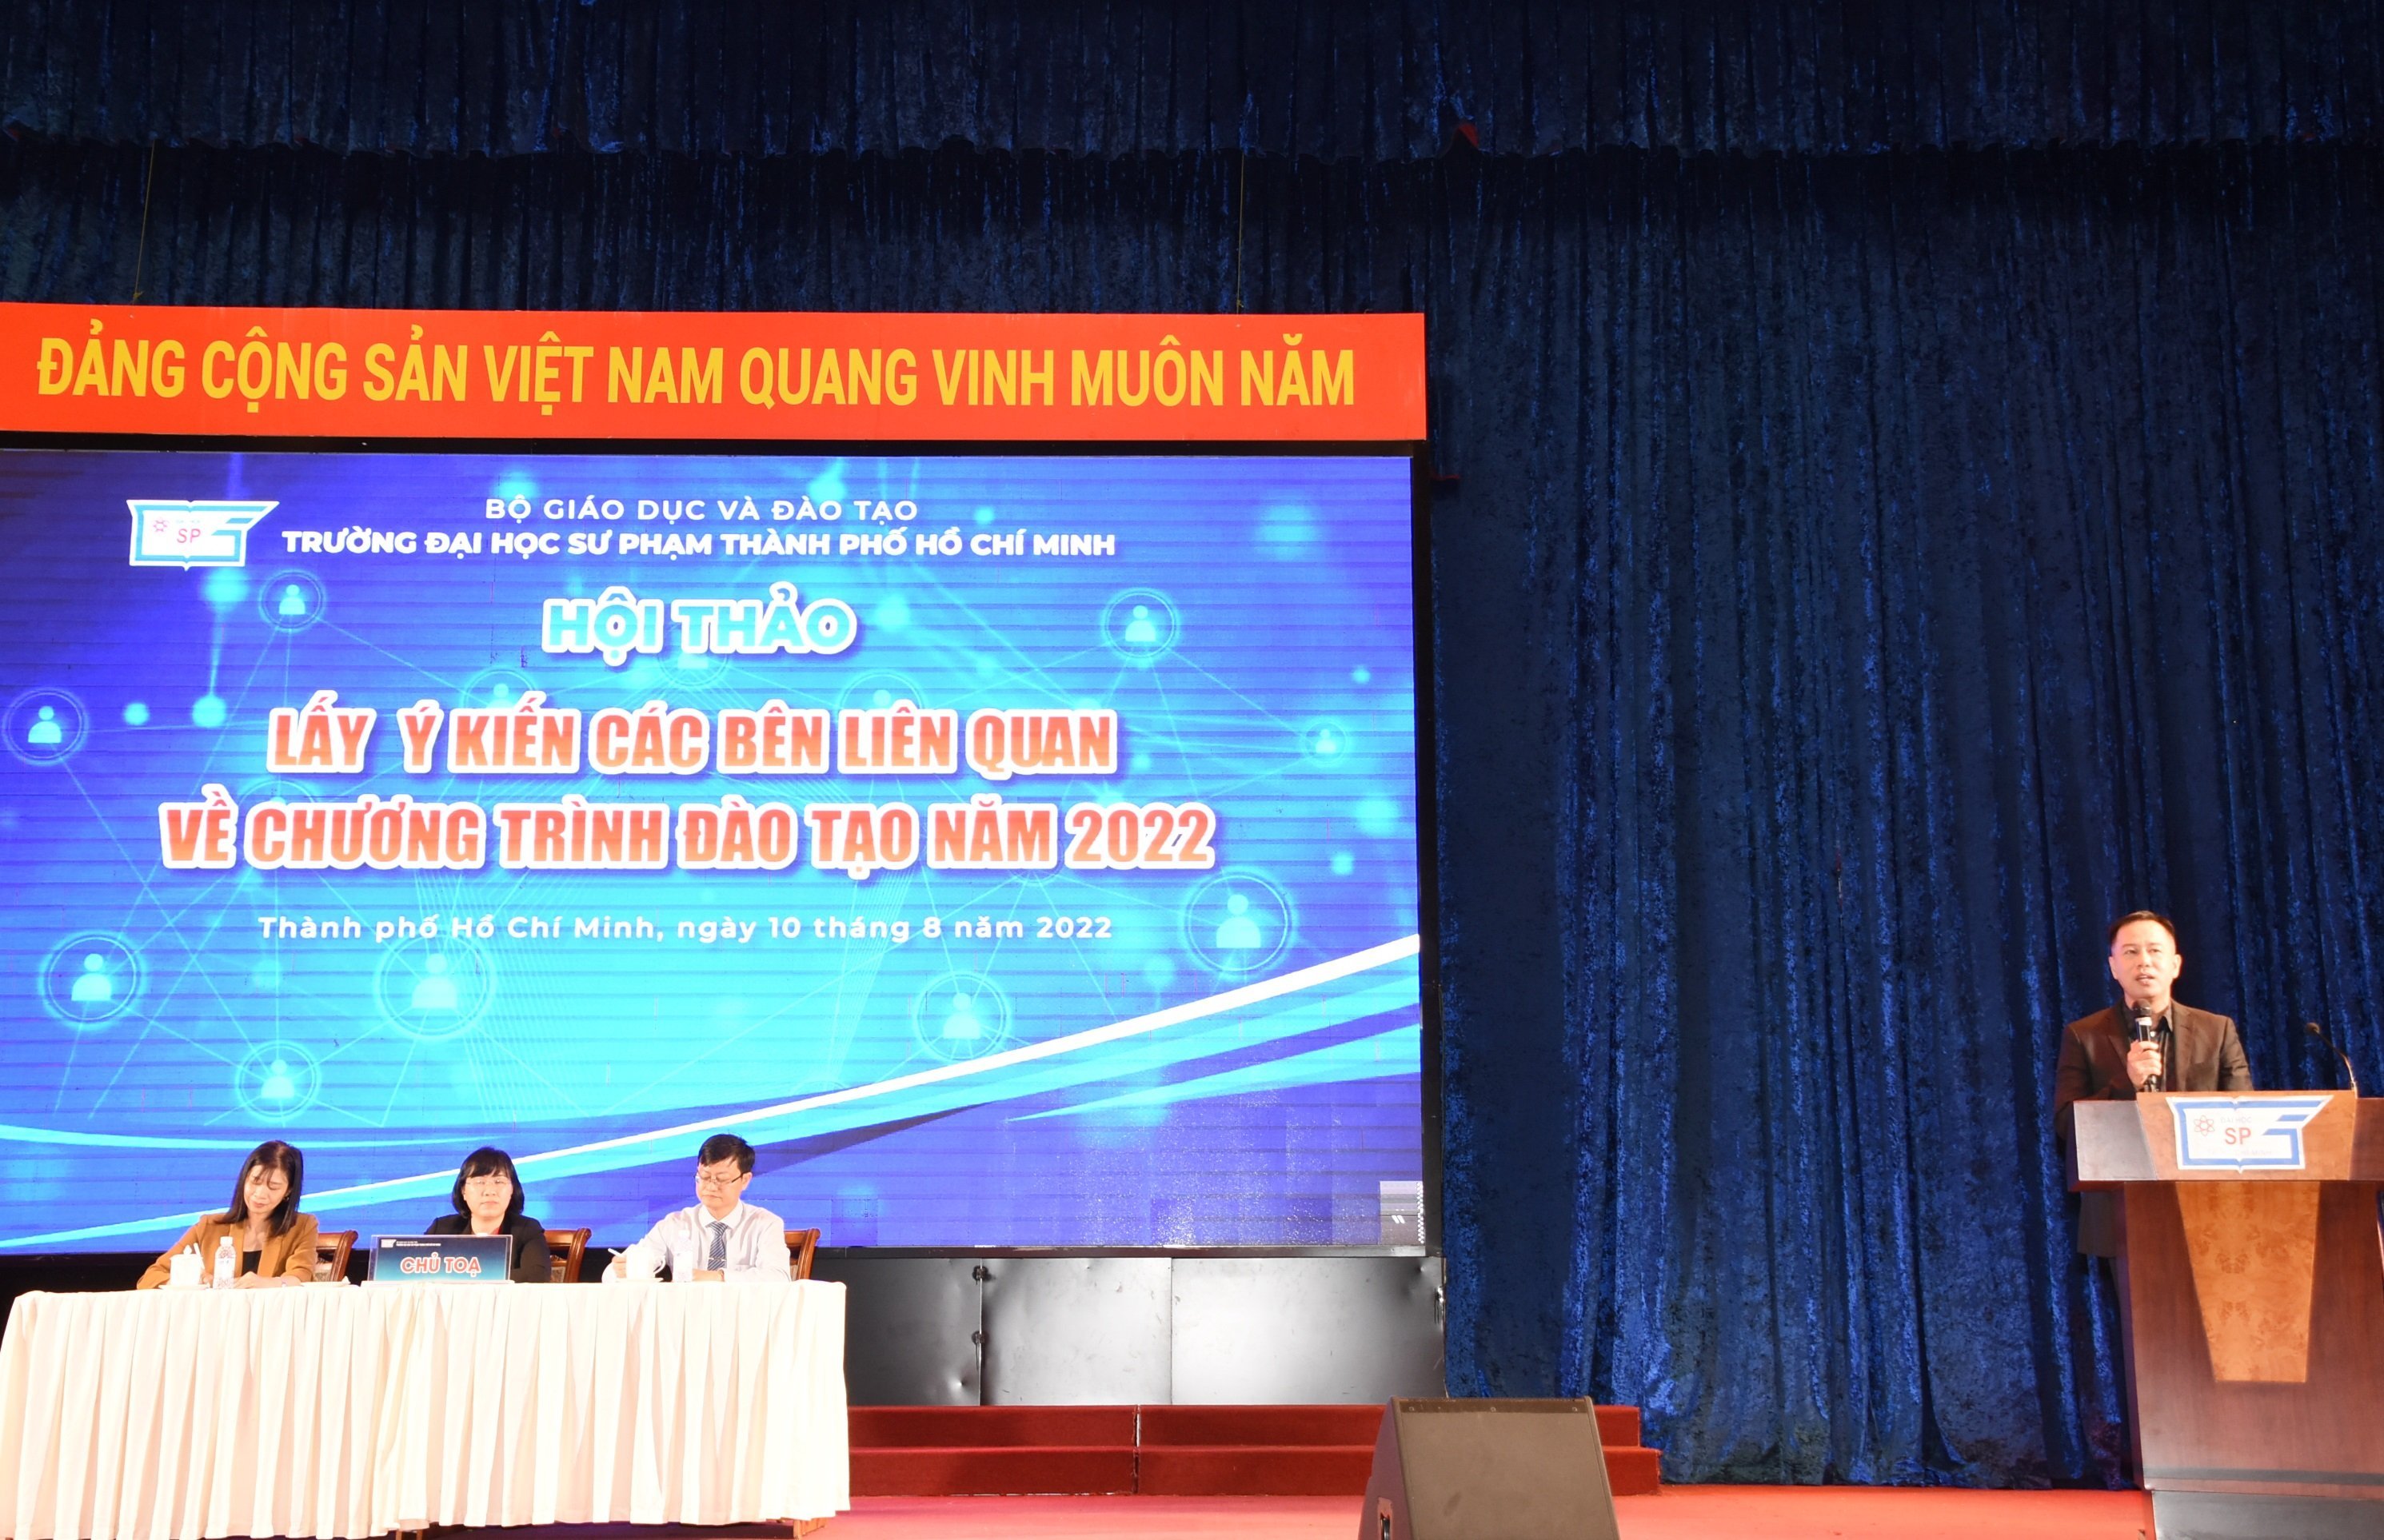 Hội thảo lấy ý kiến các bên liên quan về các chương trình đào tạo của trường Đại học Sư phạm Tp. Hồ Chí Minh năm 2022